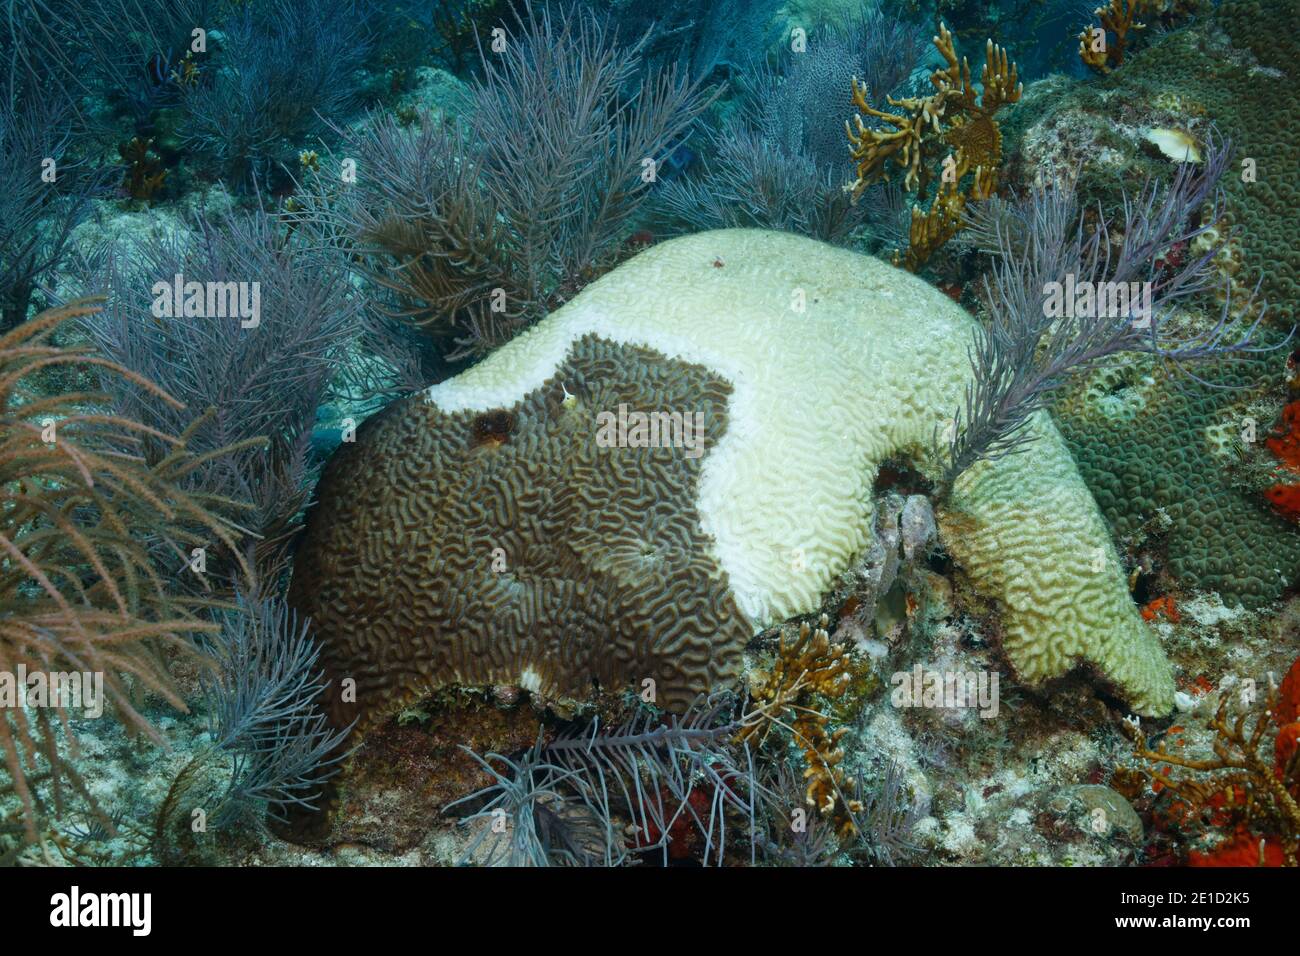 Dying symmetrical brain coral (Pseudodiploria strigosa), Key Largo, Florida, USA Stock Photo